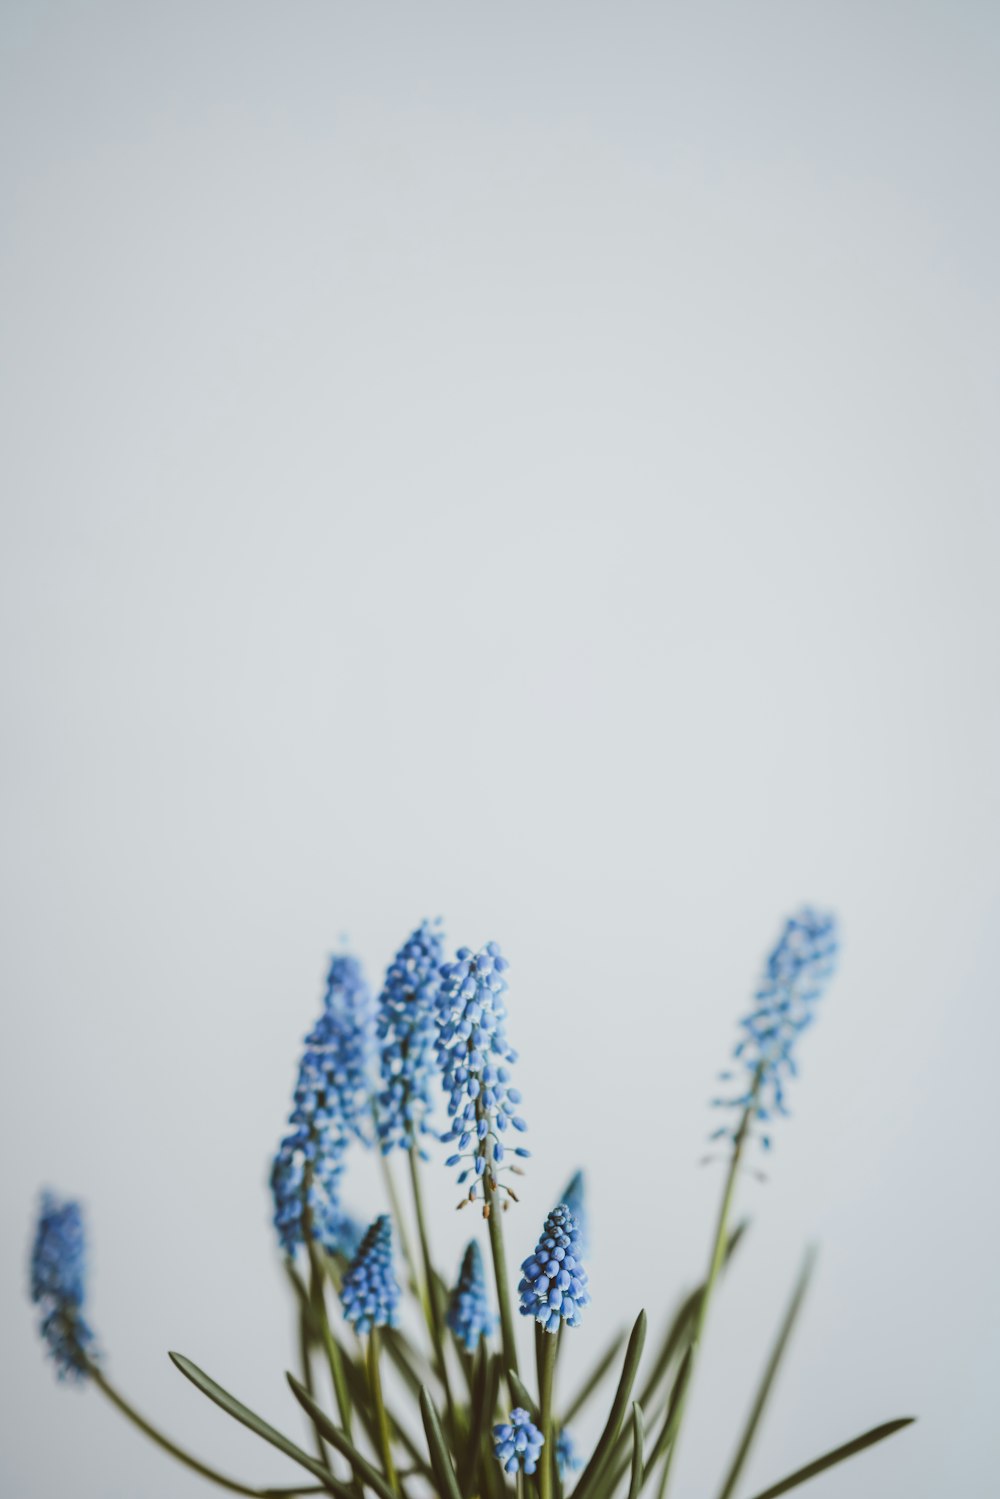 꽃이 만발한 푸른 꽃잎의 선택적 초점 사진